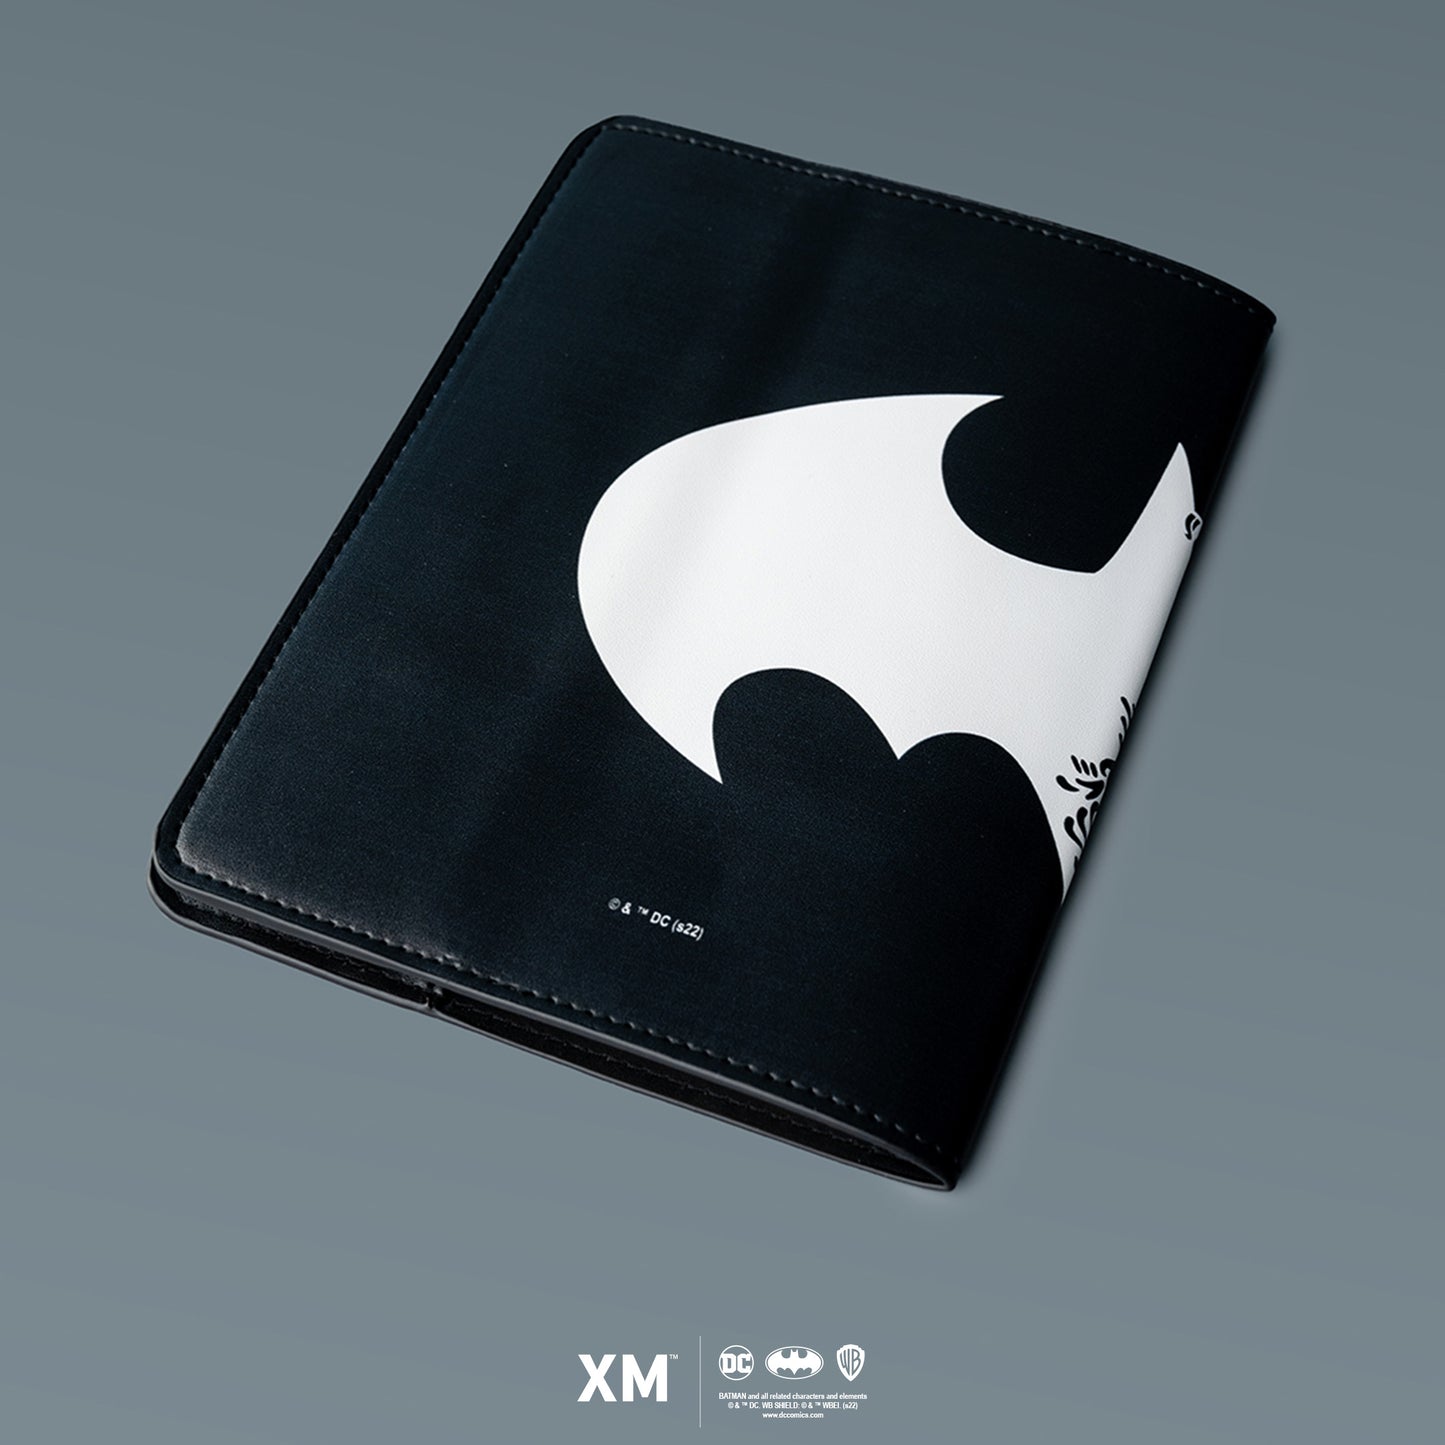 Batman Samurai Collection - Shogun-Inspired Logo Notebook Sleeve